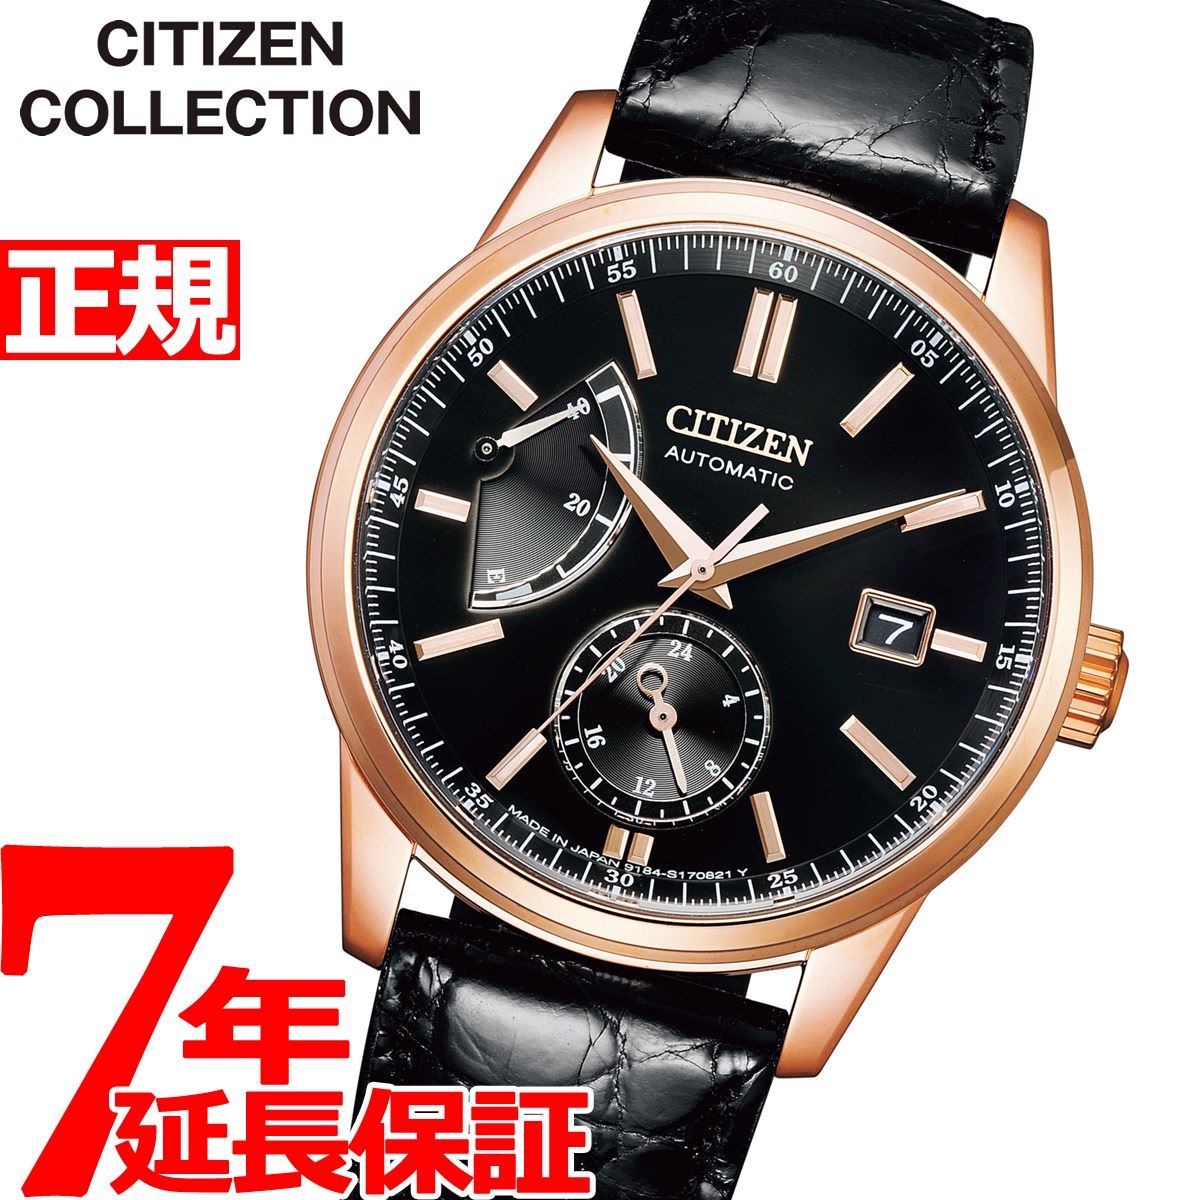 シチズン CITIZEN 腕時計 メンズ NB3002-00E シチズン コレクション メカニカル クラシカルライン マルチハンズ CITIZEN COLLECTION 自動巻き（9184/手巻き付） ブラックxブラック アナログ表示